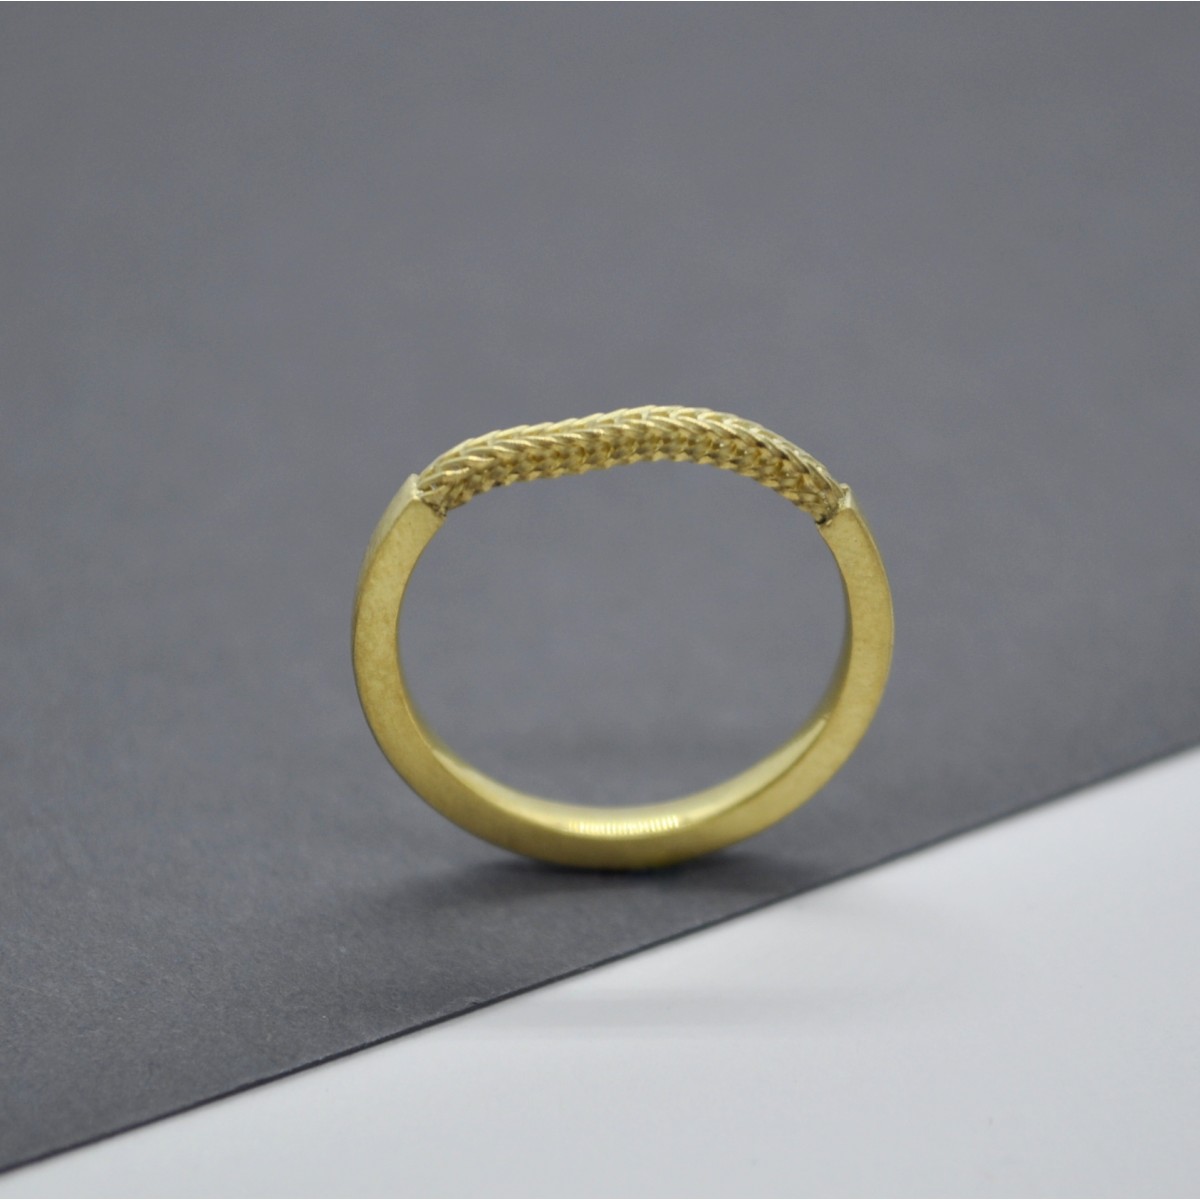 Ring "Verkettet" aus 925/- Silber von Doppelludwig